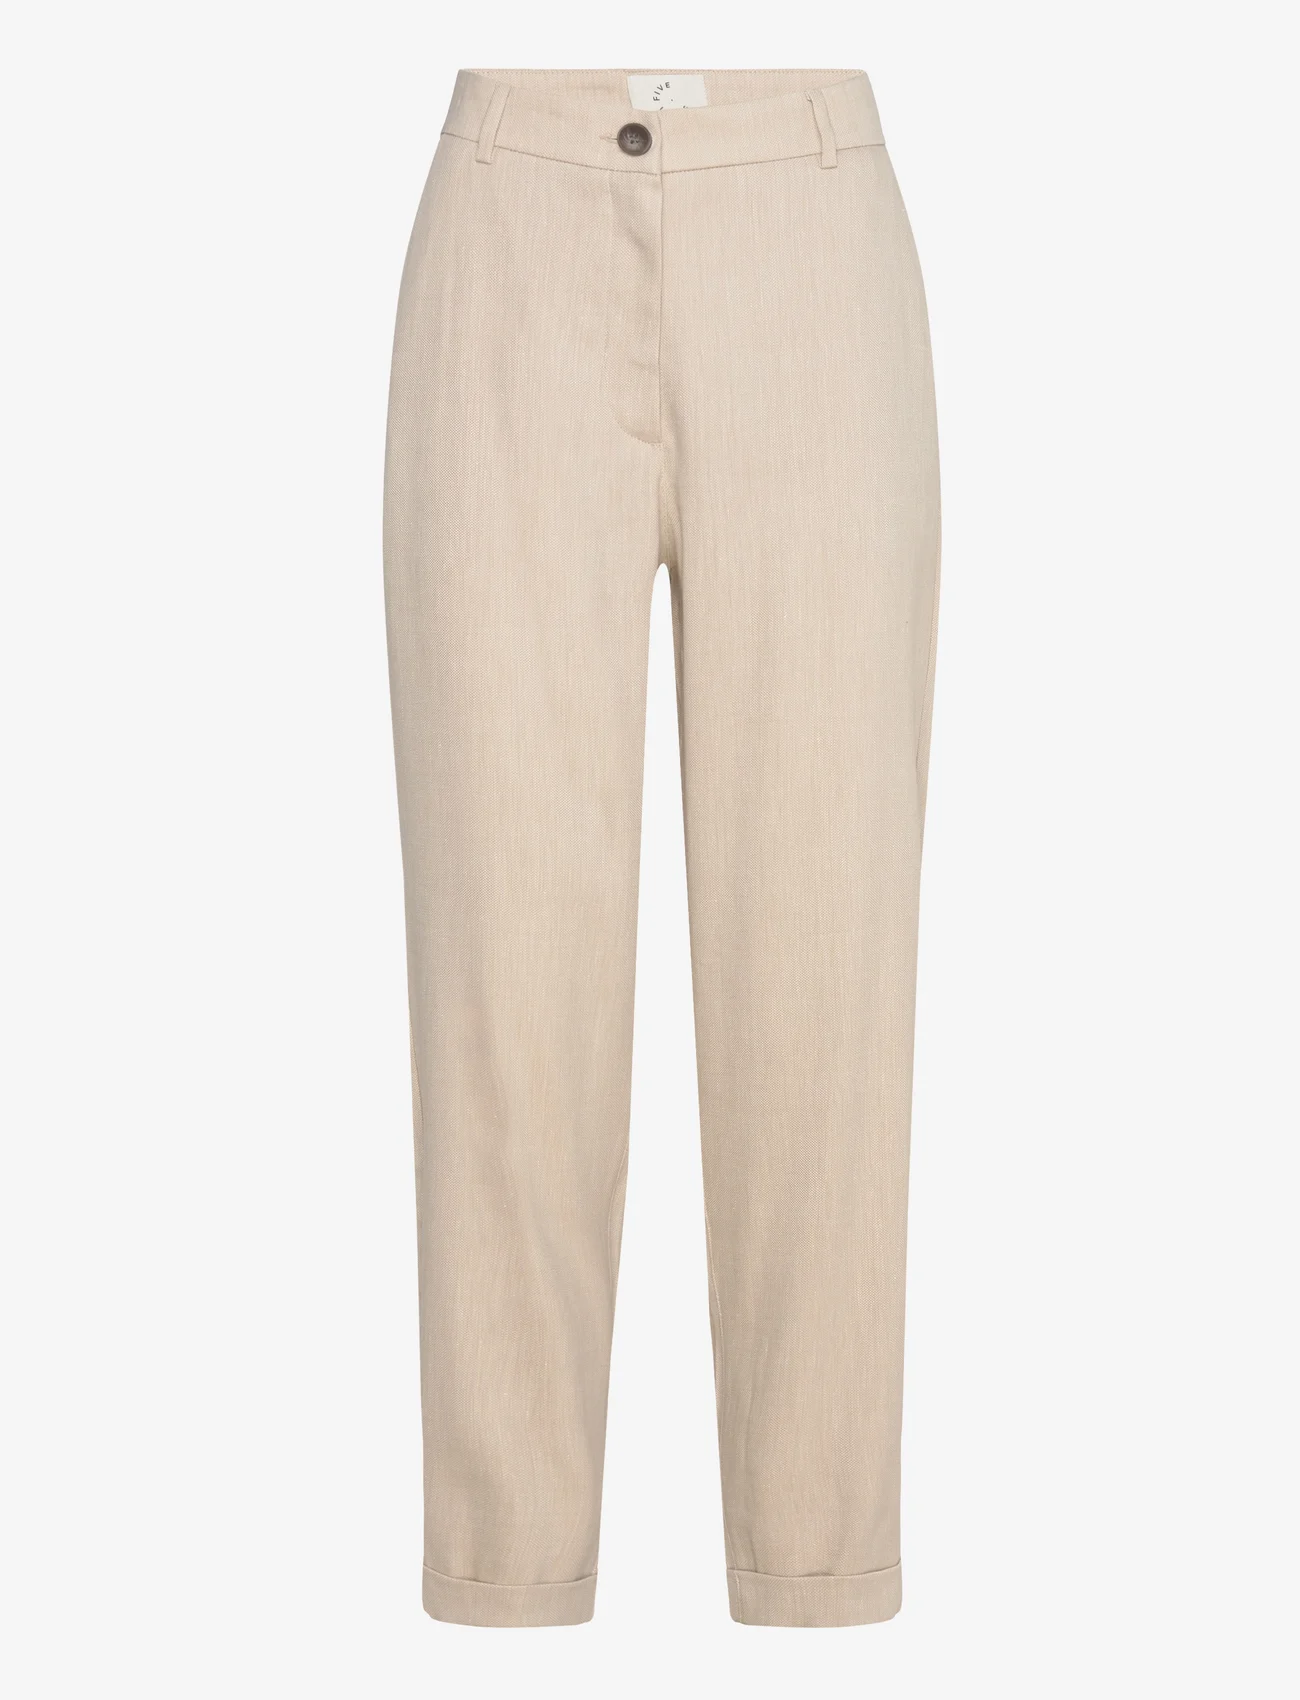 FIVEUNITS - EmmaFV - linen trousers - sand linen - 0